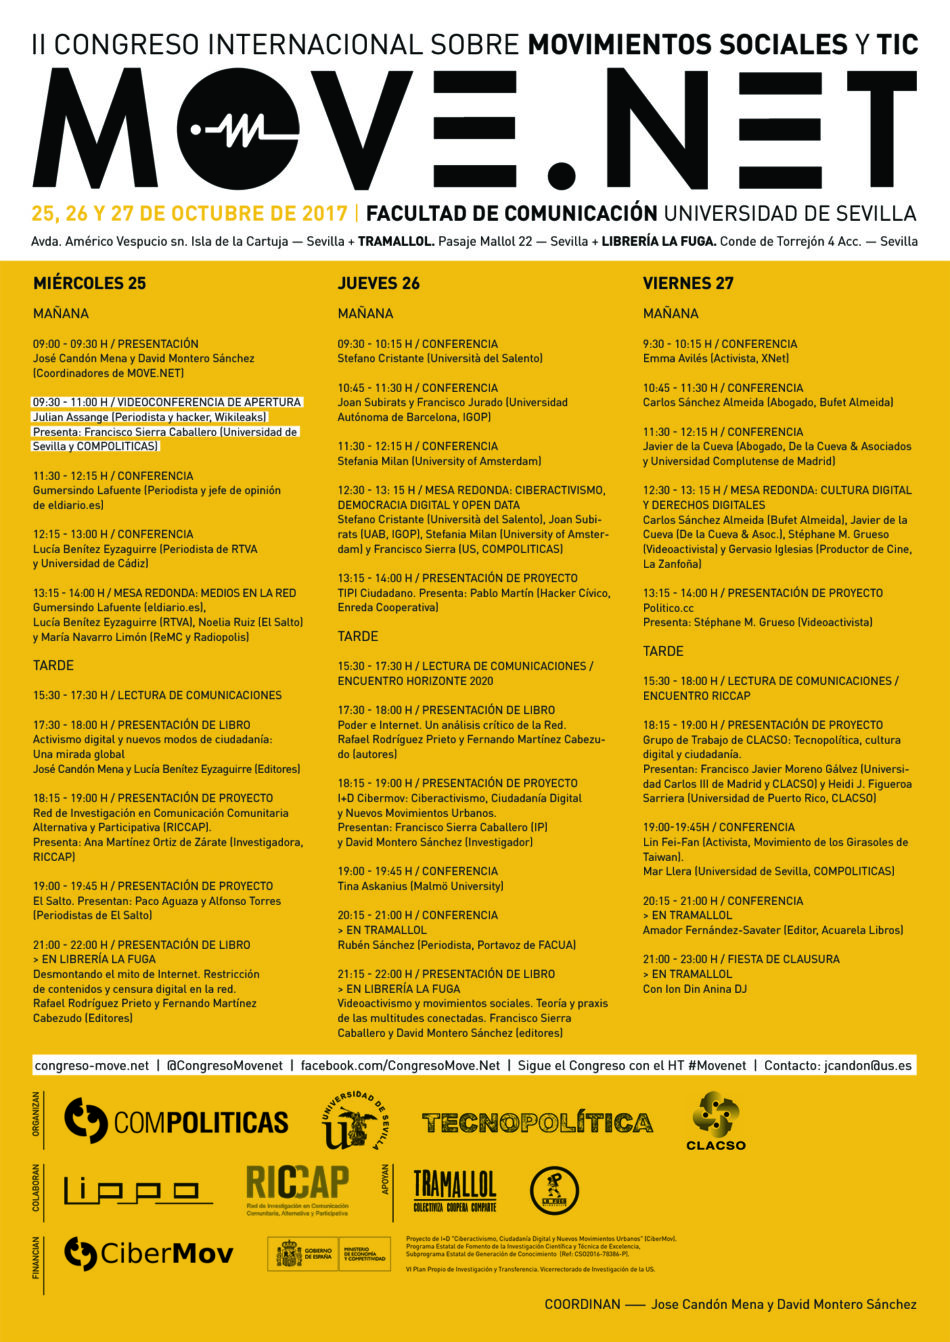 El Congreso Move.net reune a activistas y expertos mundiales de la tecnopolítica a partir de mañana en la Universidad de Sevilla